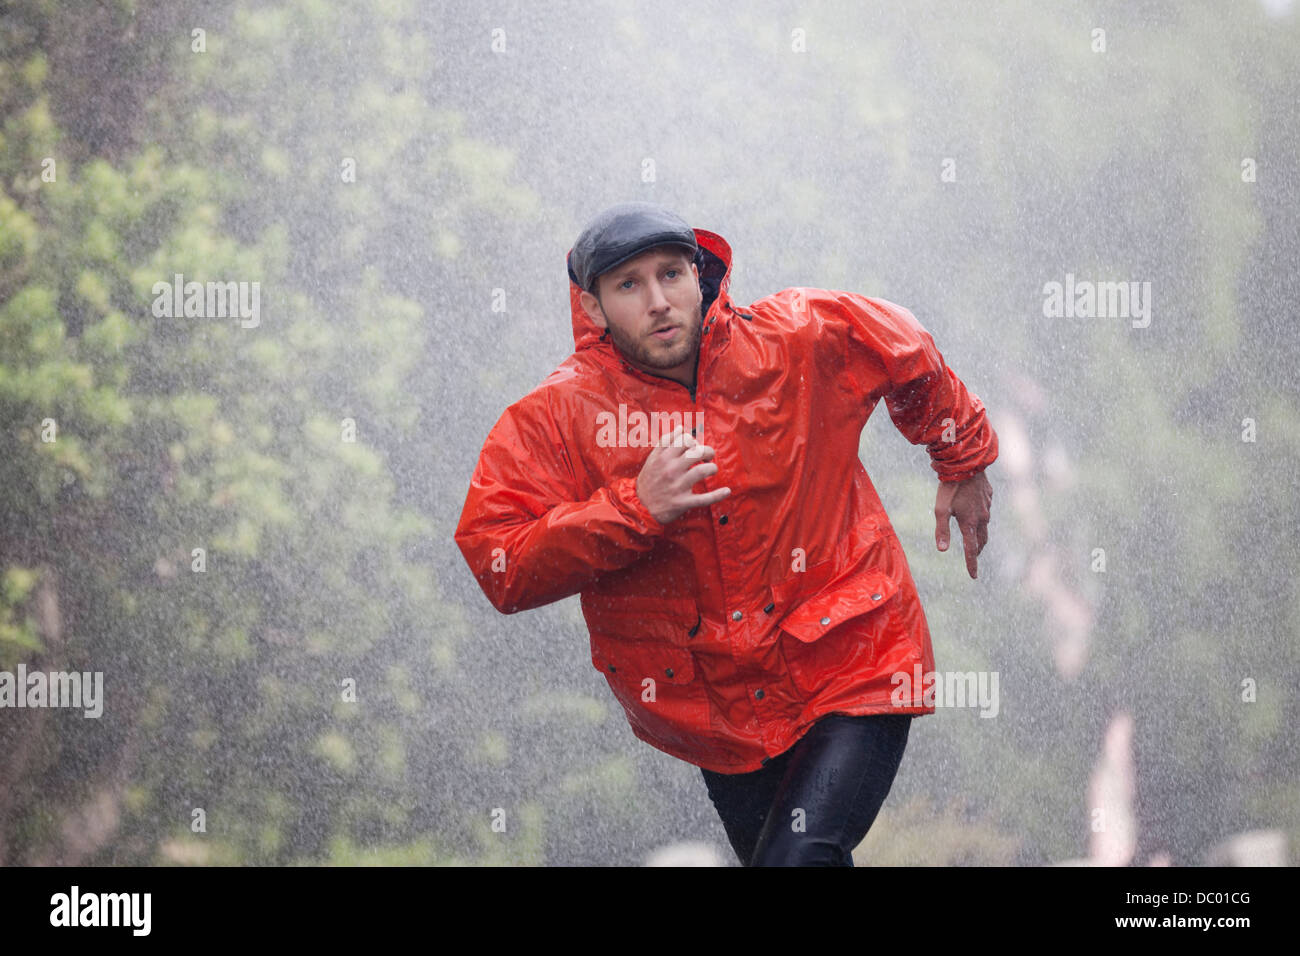 Mann im Regenmantel laufen im Regen Stockfoto